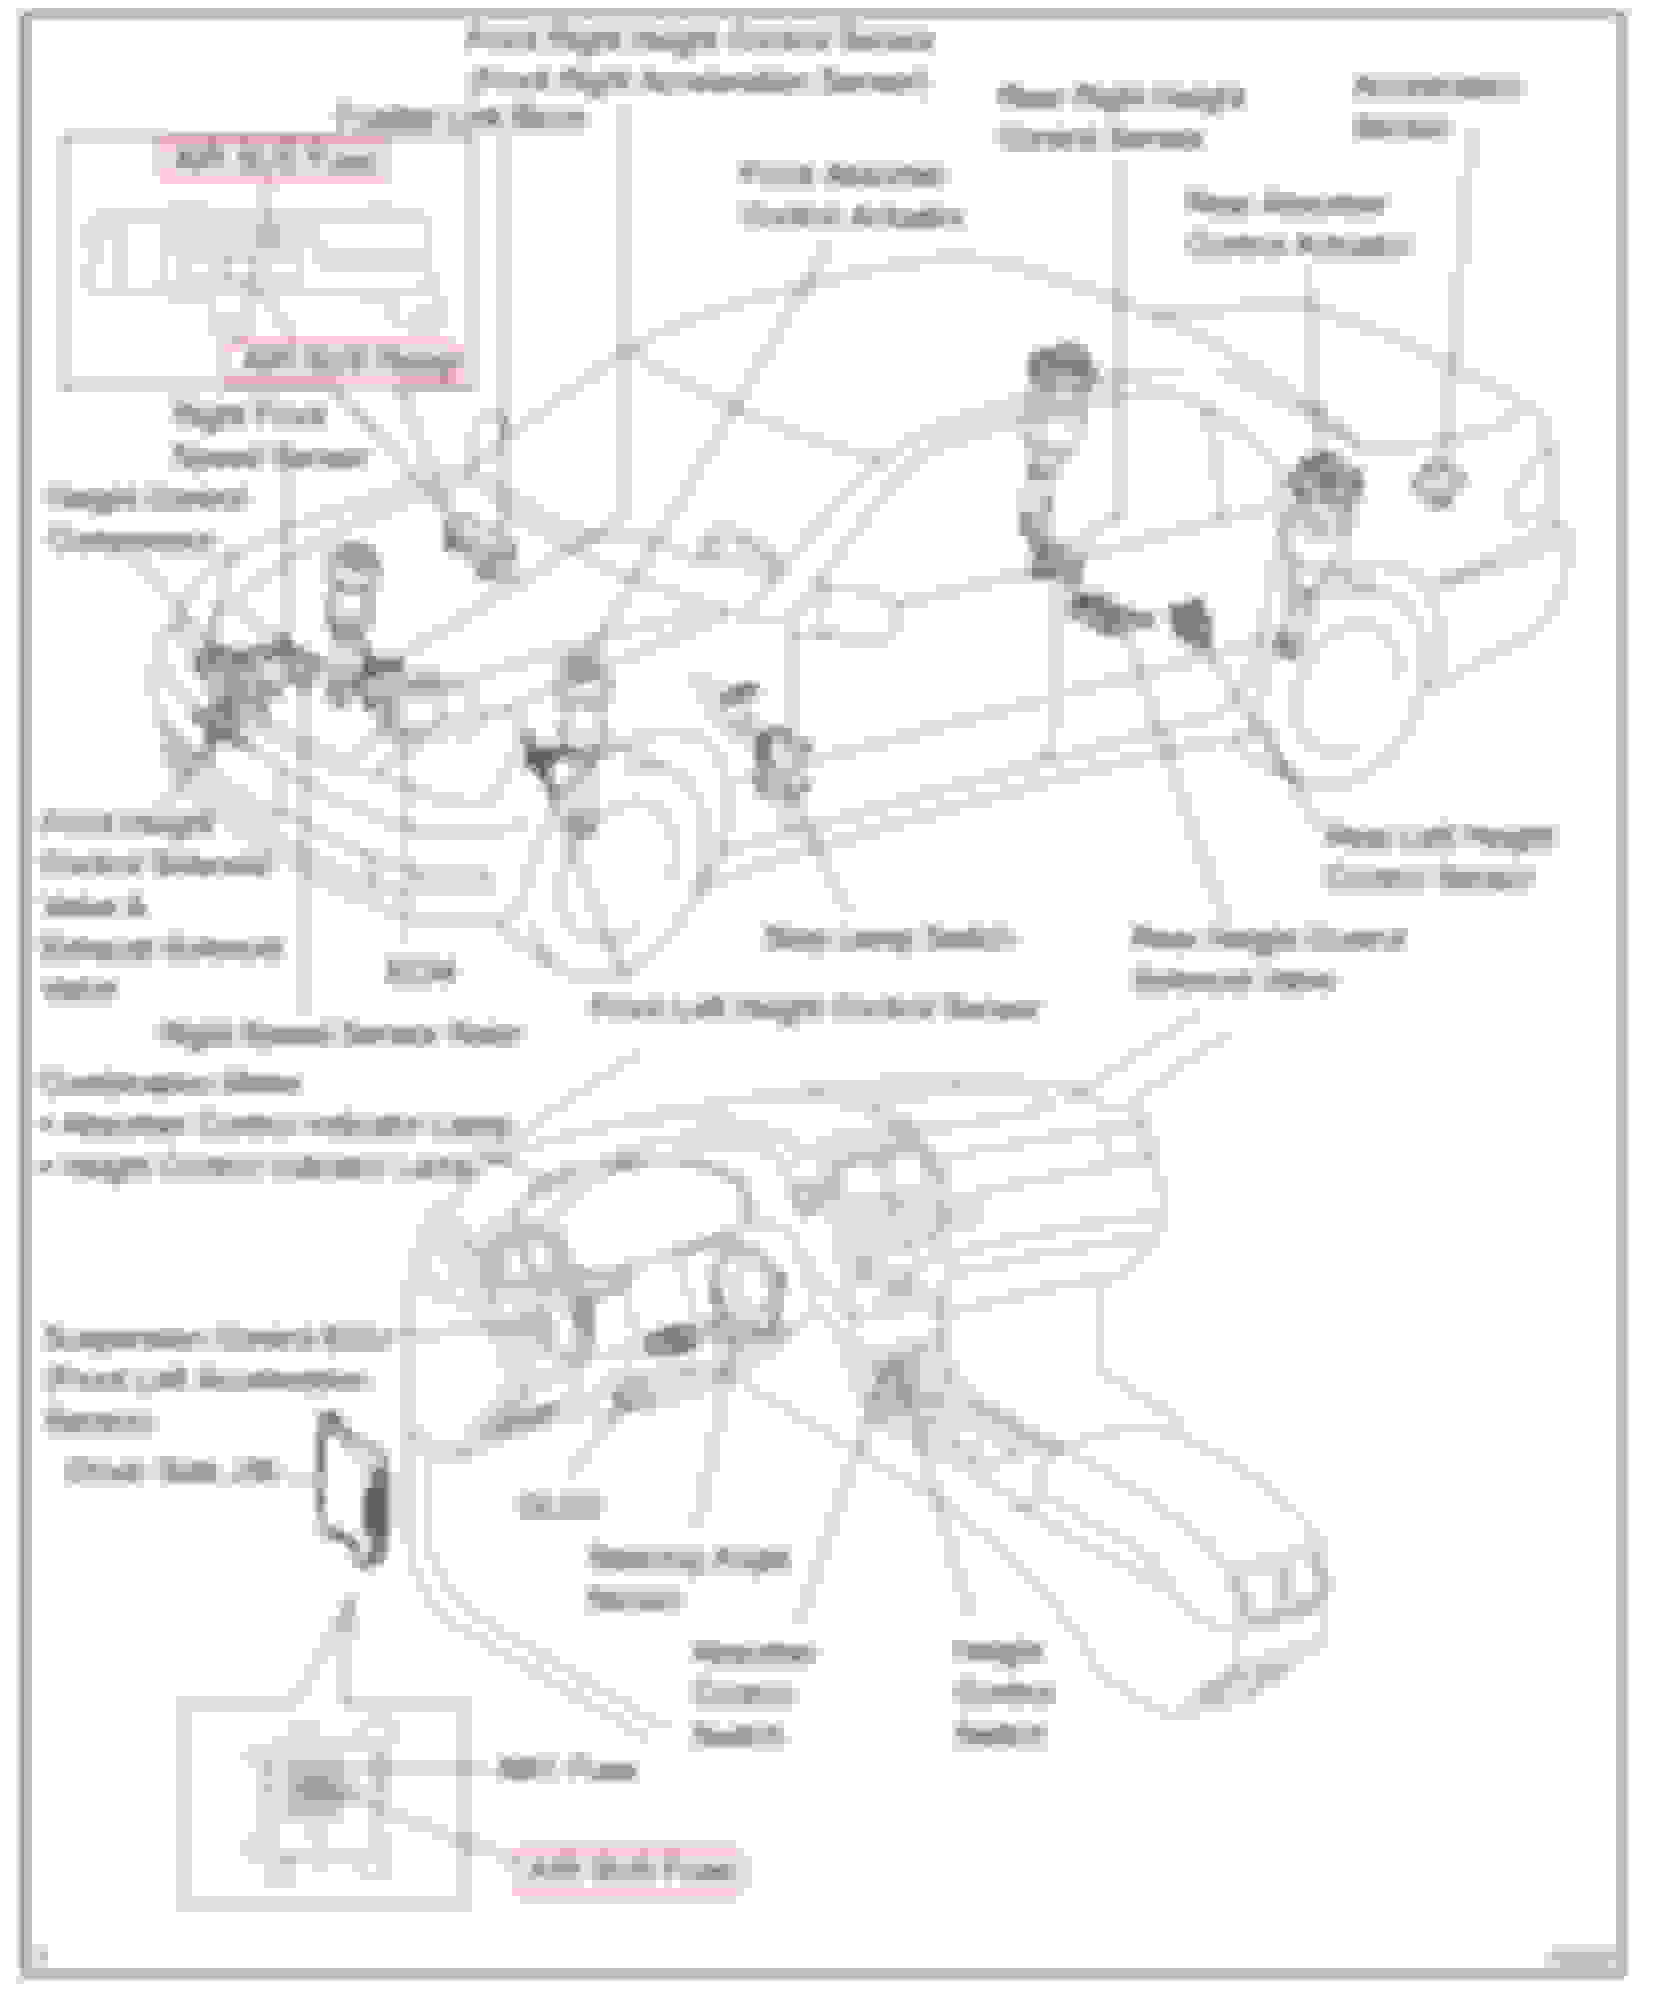 Wiring Diagram PDF: 2003 Lexus Ls 430 Engine Diagram